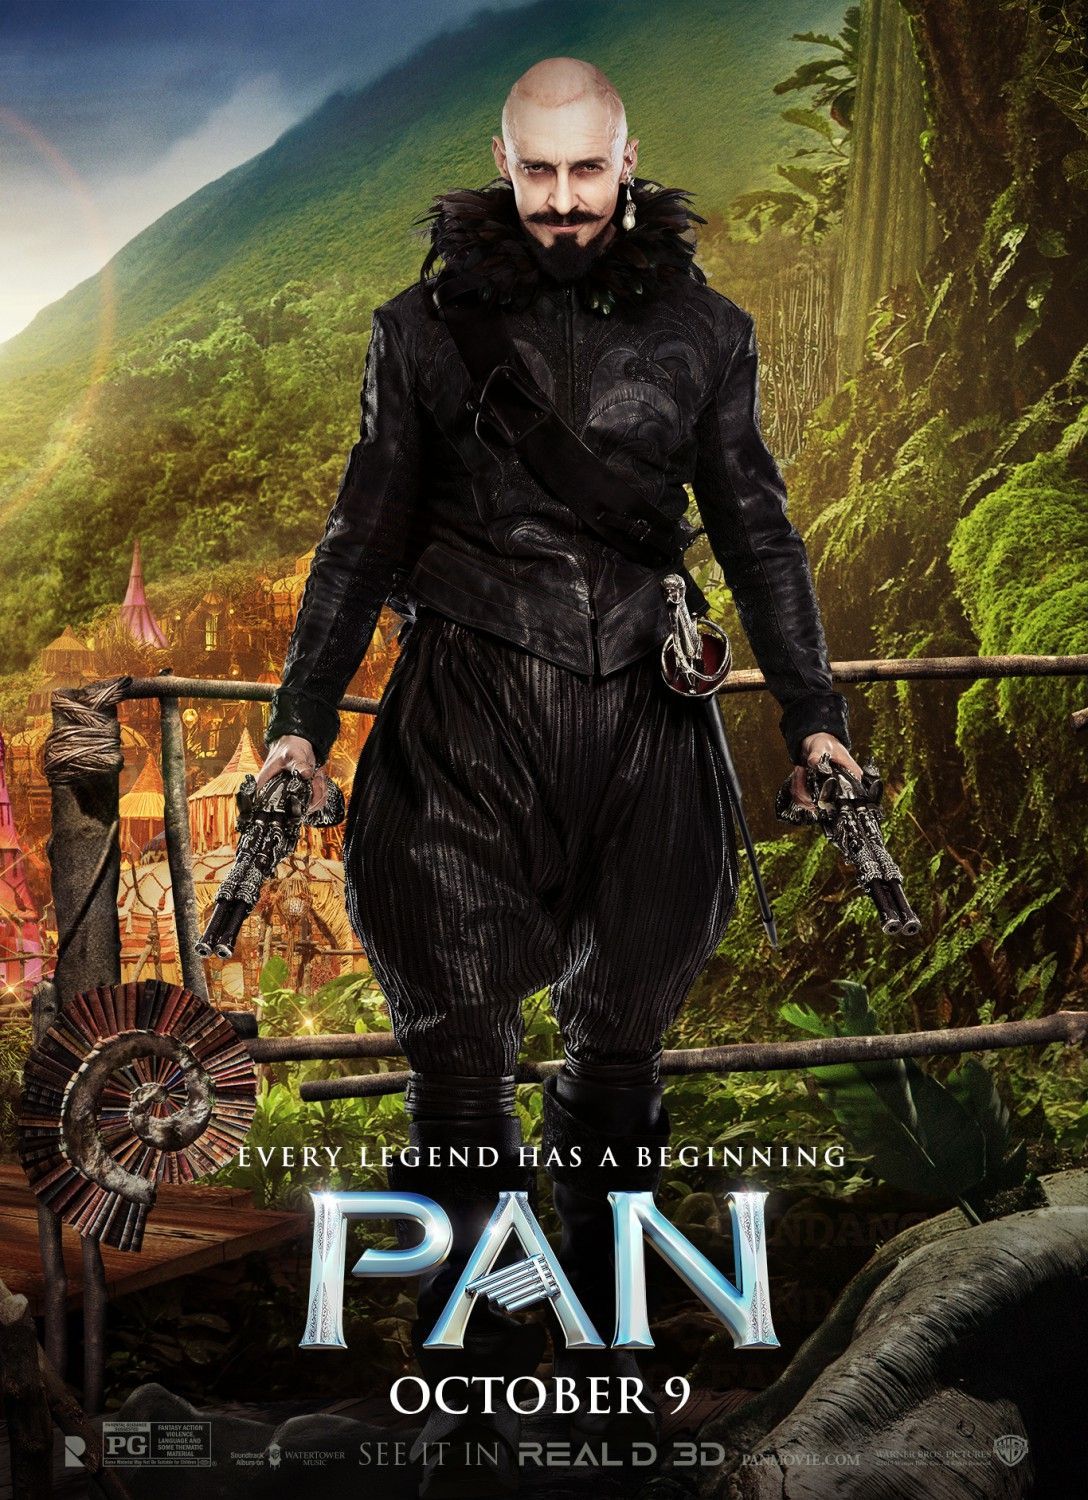 Hugh Jackman Blackbeard in Pan